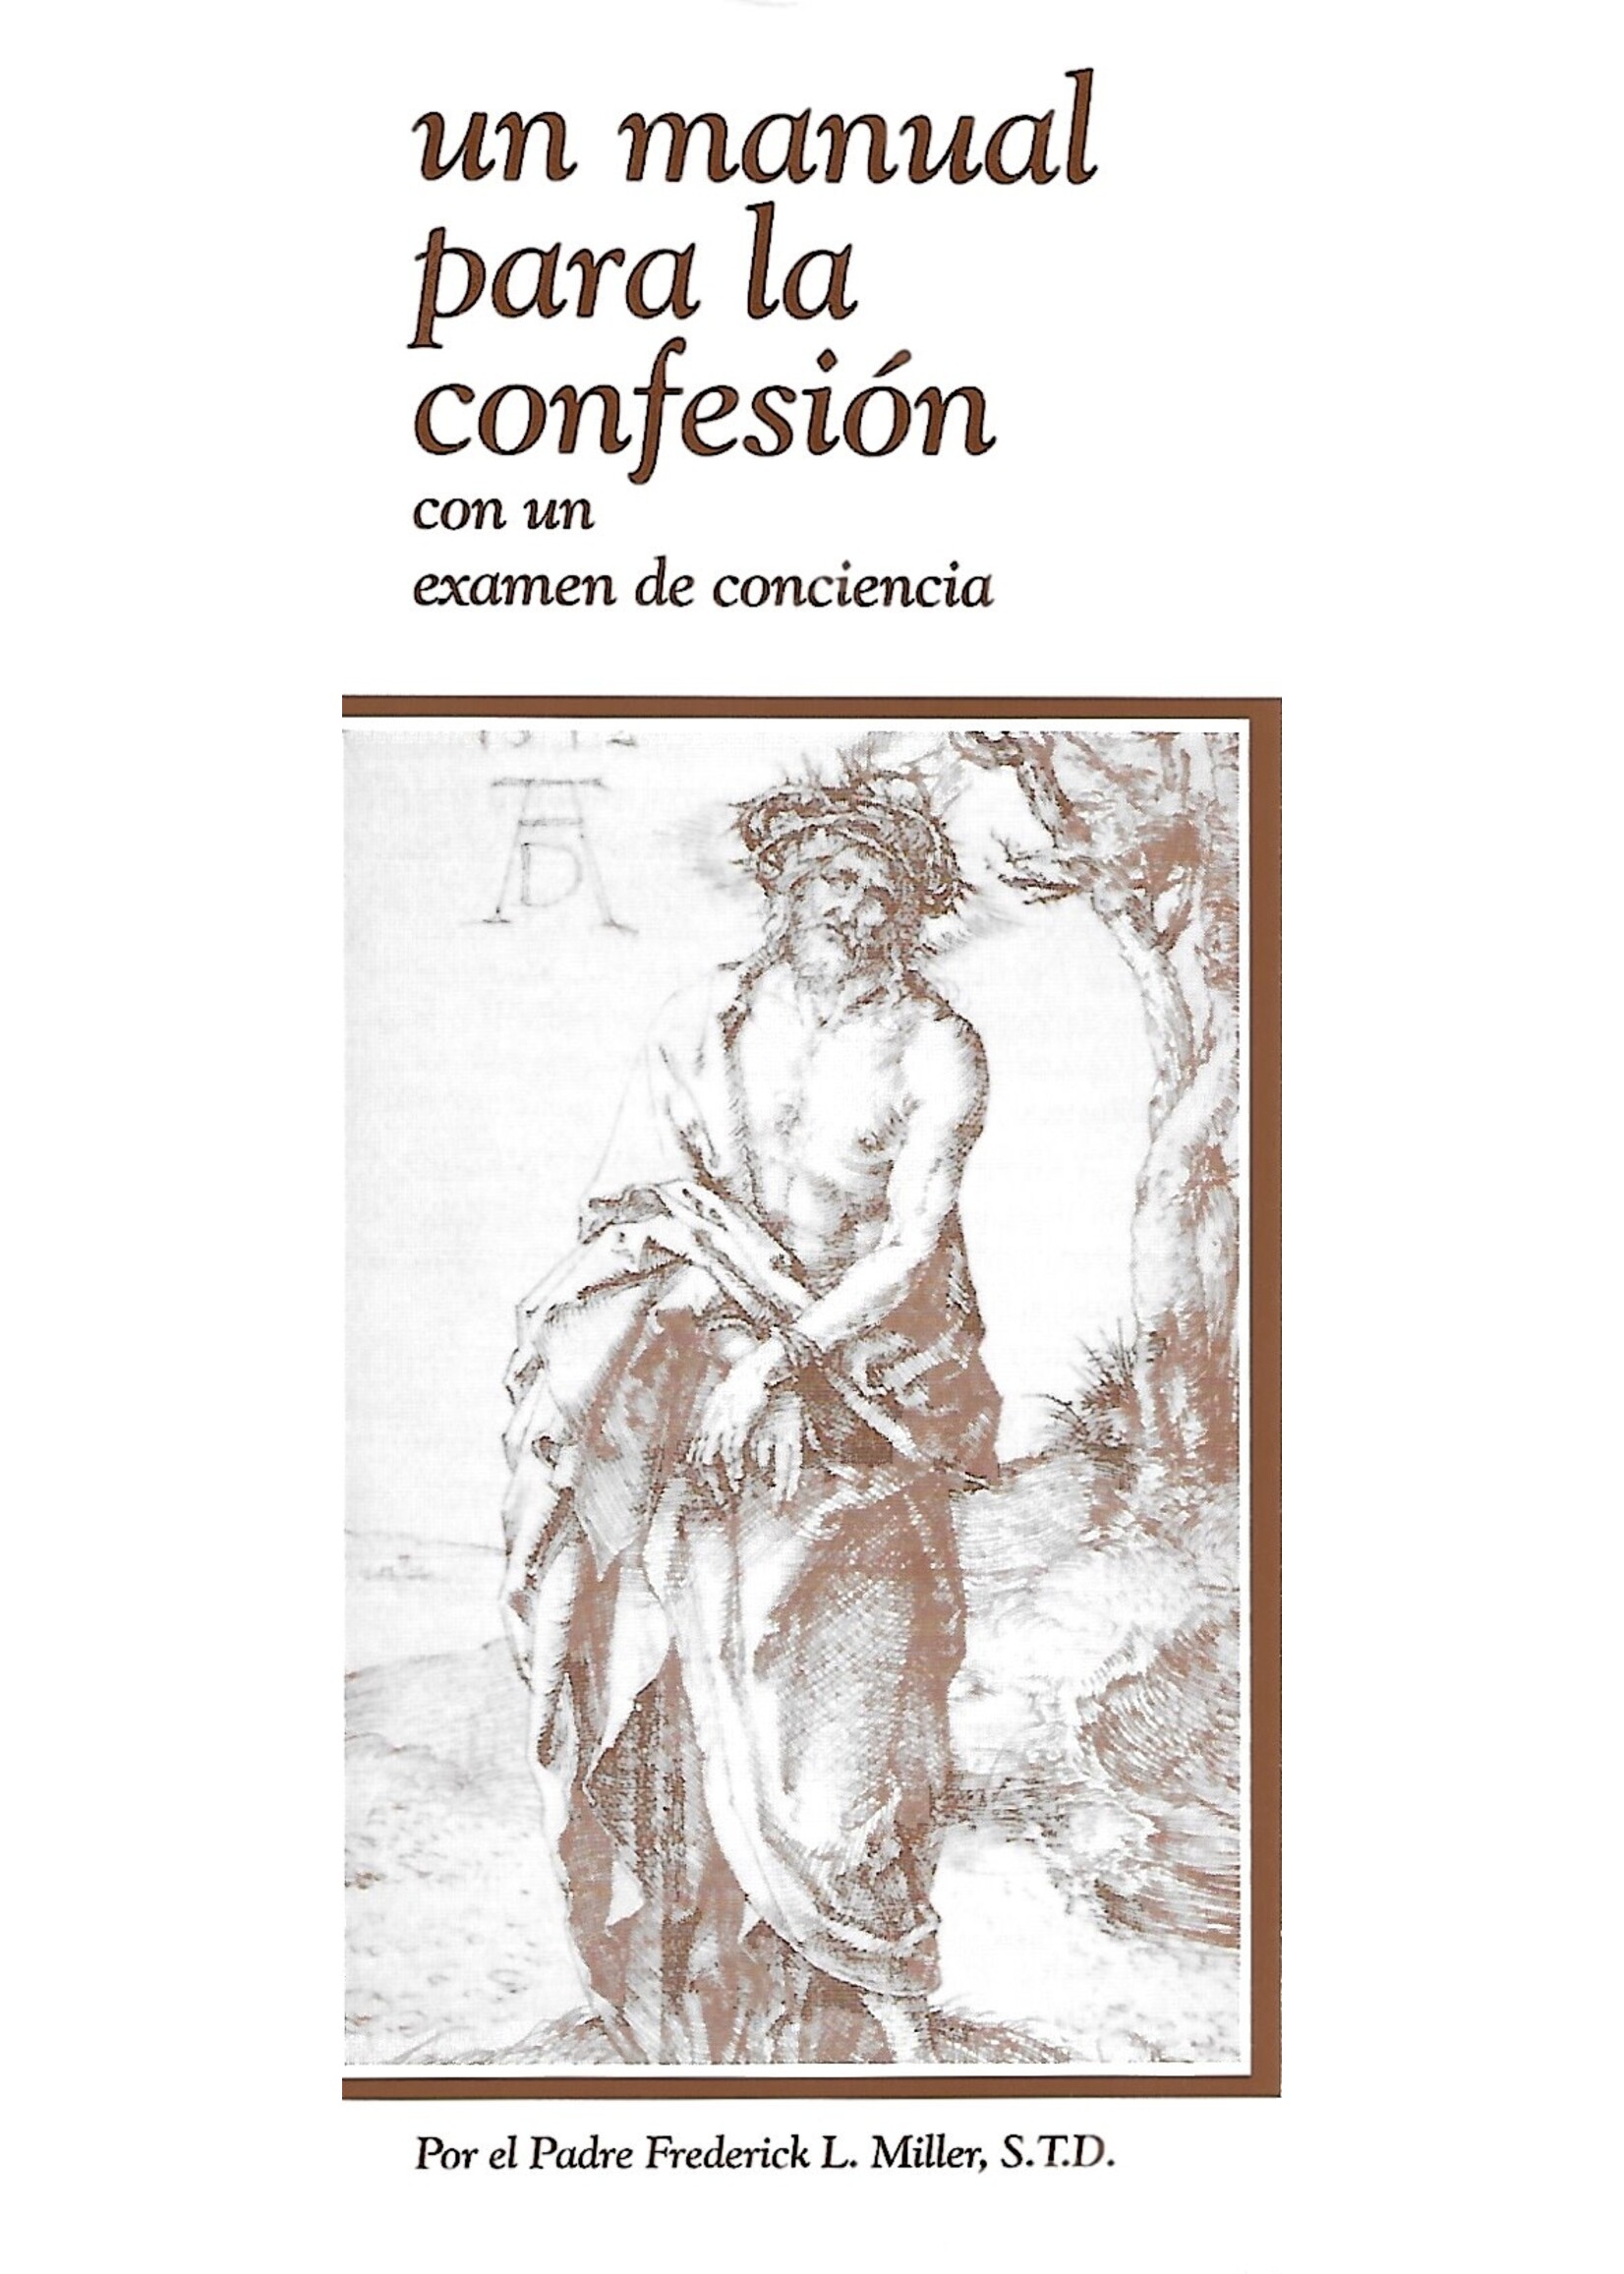 Un Manual para la Confesion con un examen de conciencia